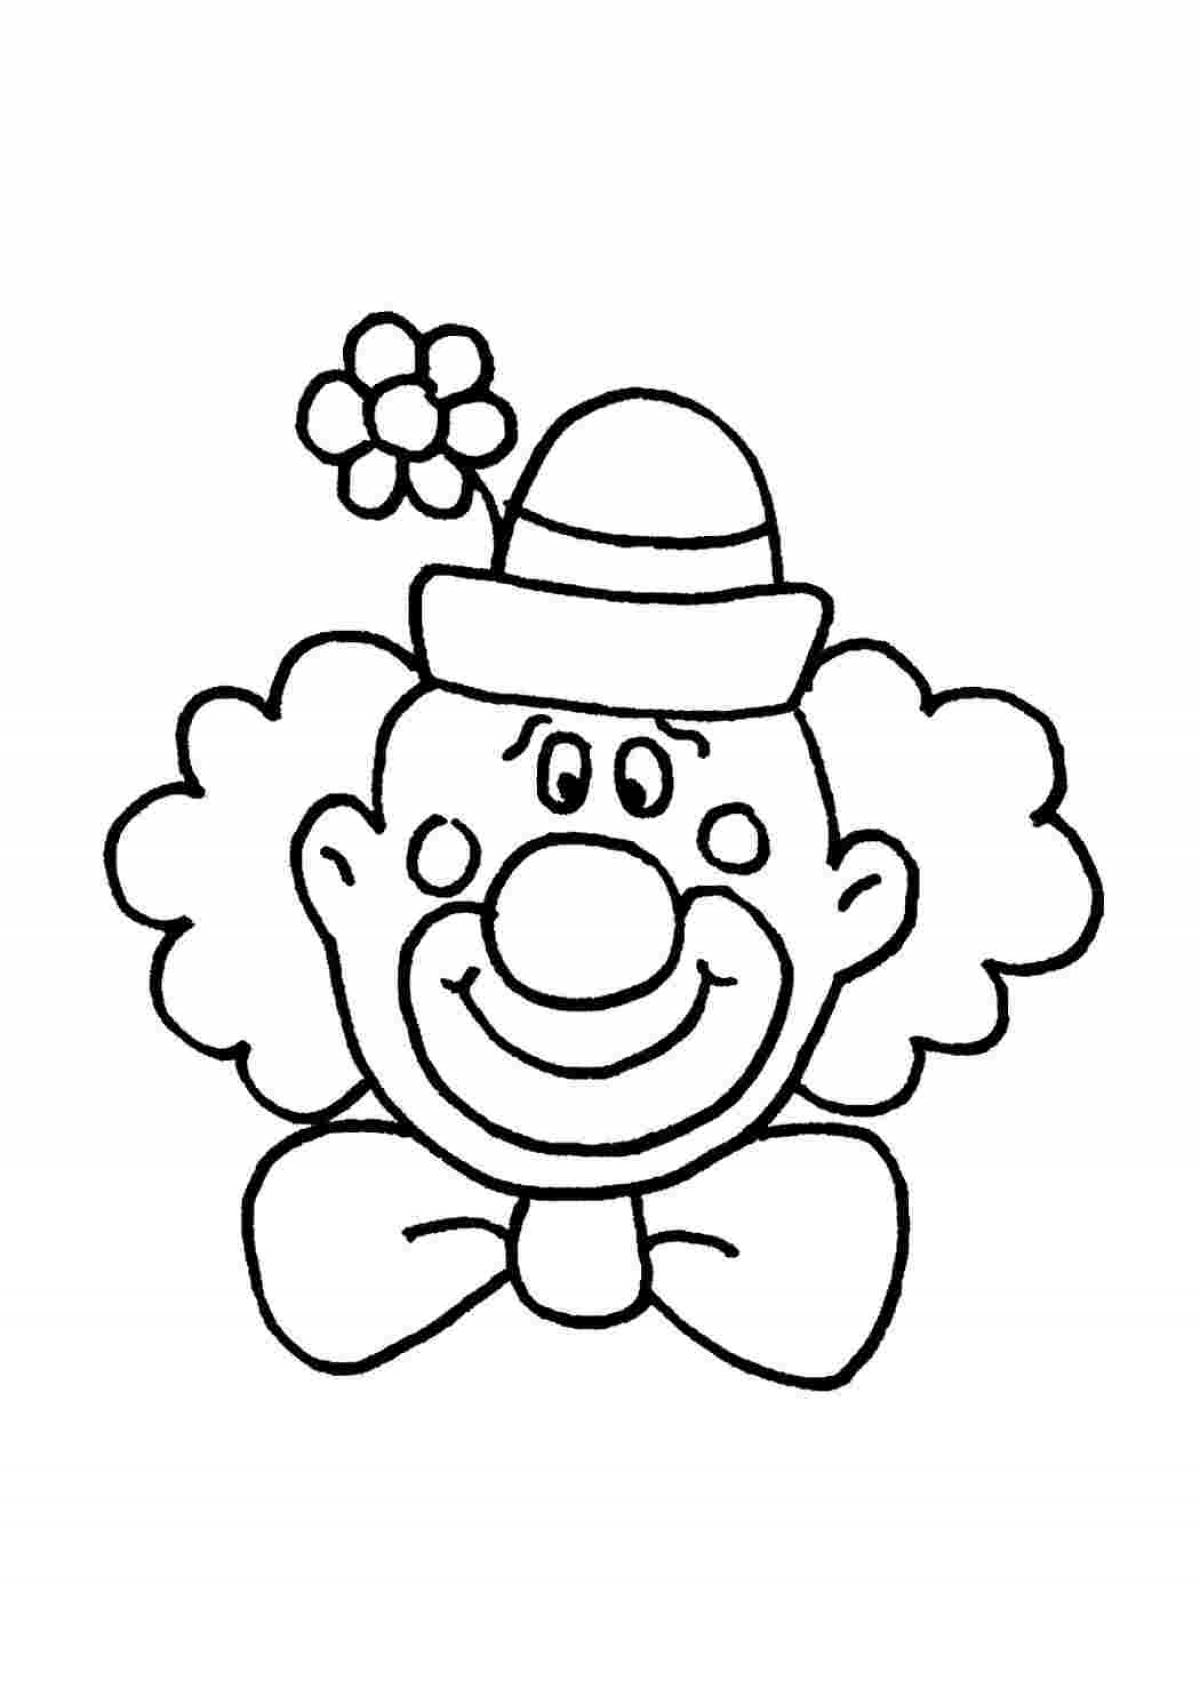 Шаблон клоуна для аппликации для детей. Клоун раскраска. Клоун раскраска для малышей. Клоун раскраска для детей. Клоун для раскрашивания детям.